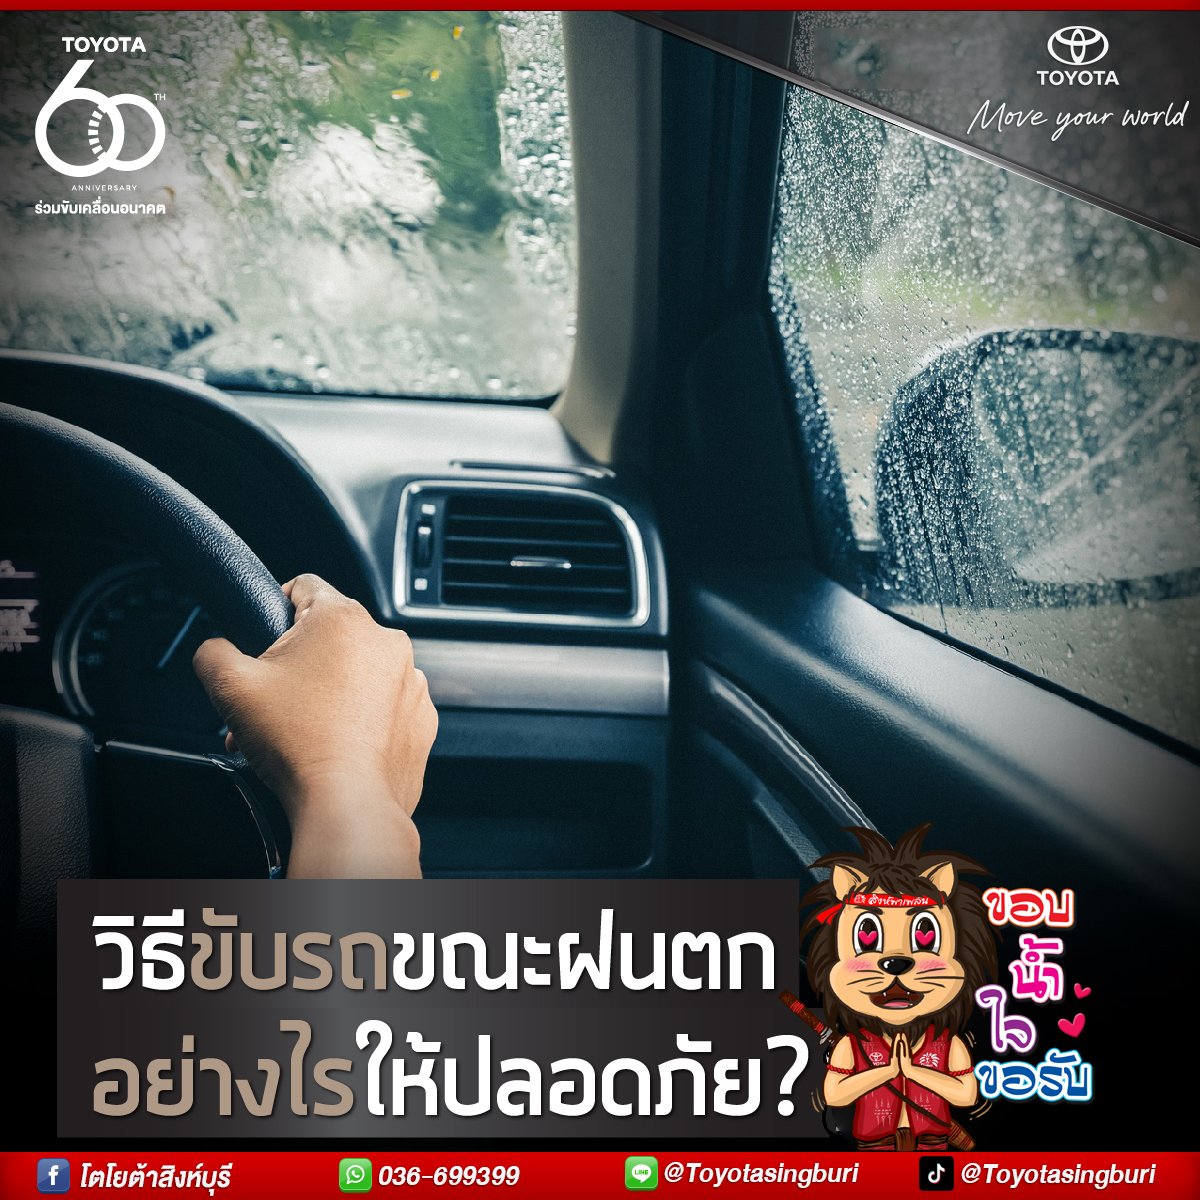 วิธีขับรถขณะฝนตก อย่างไรให้ปลอดภัย?